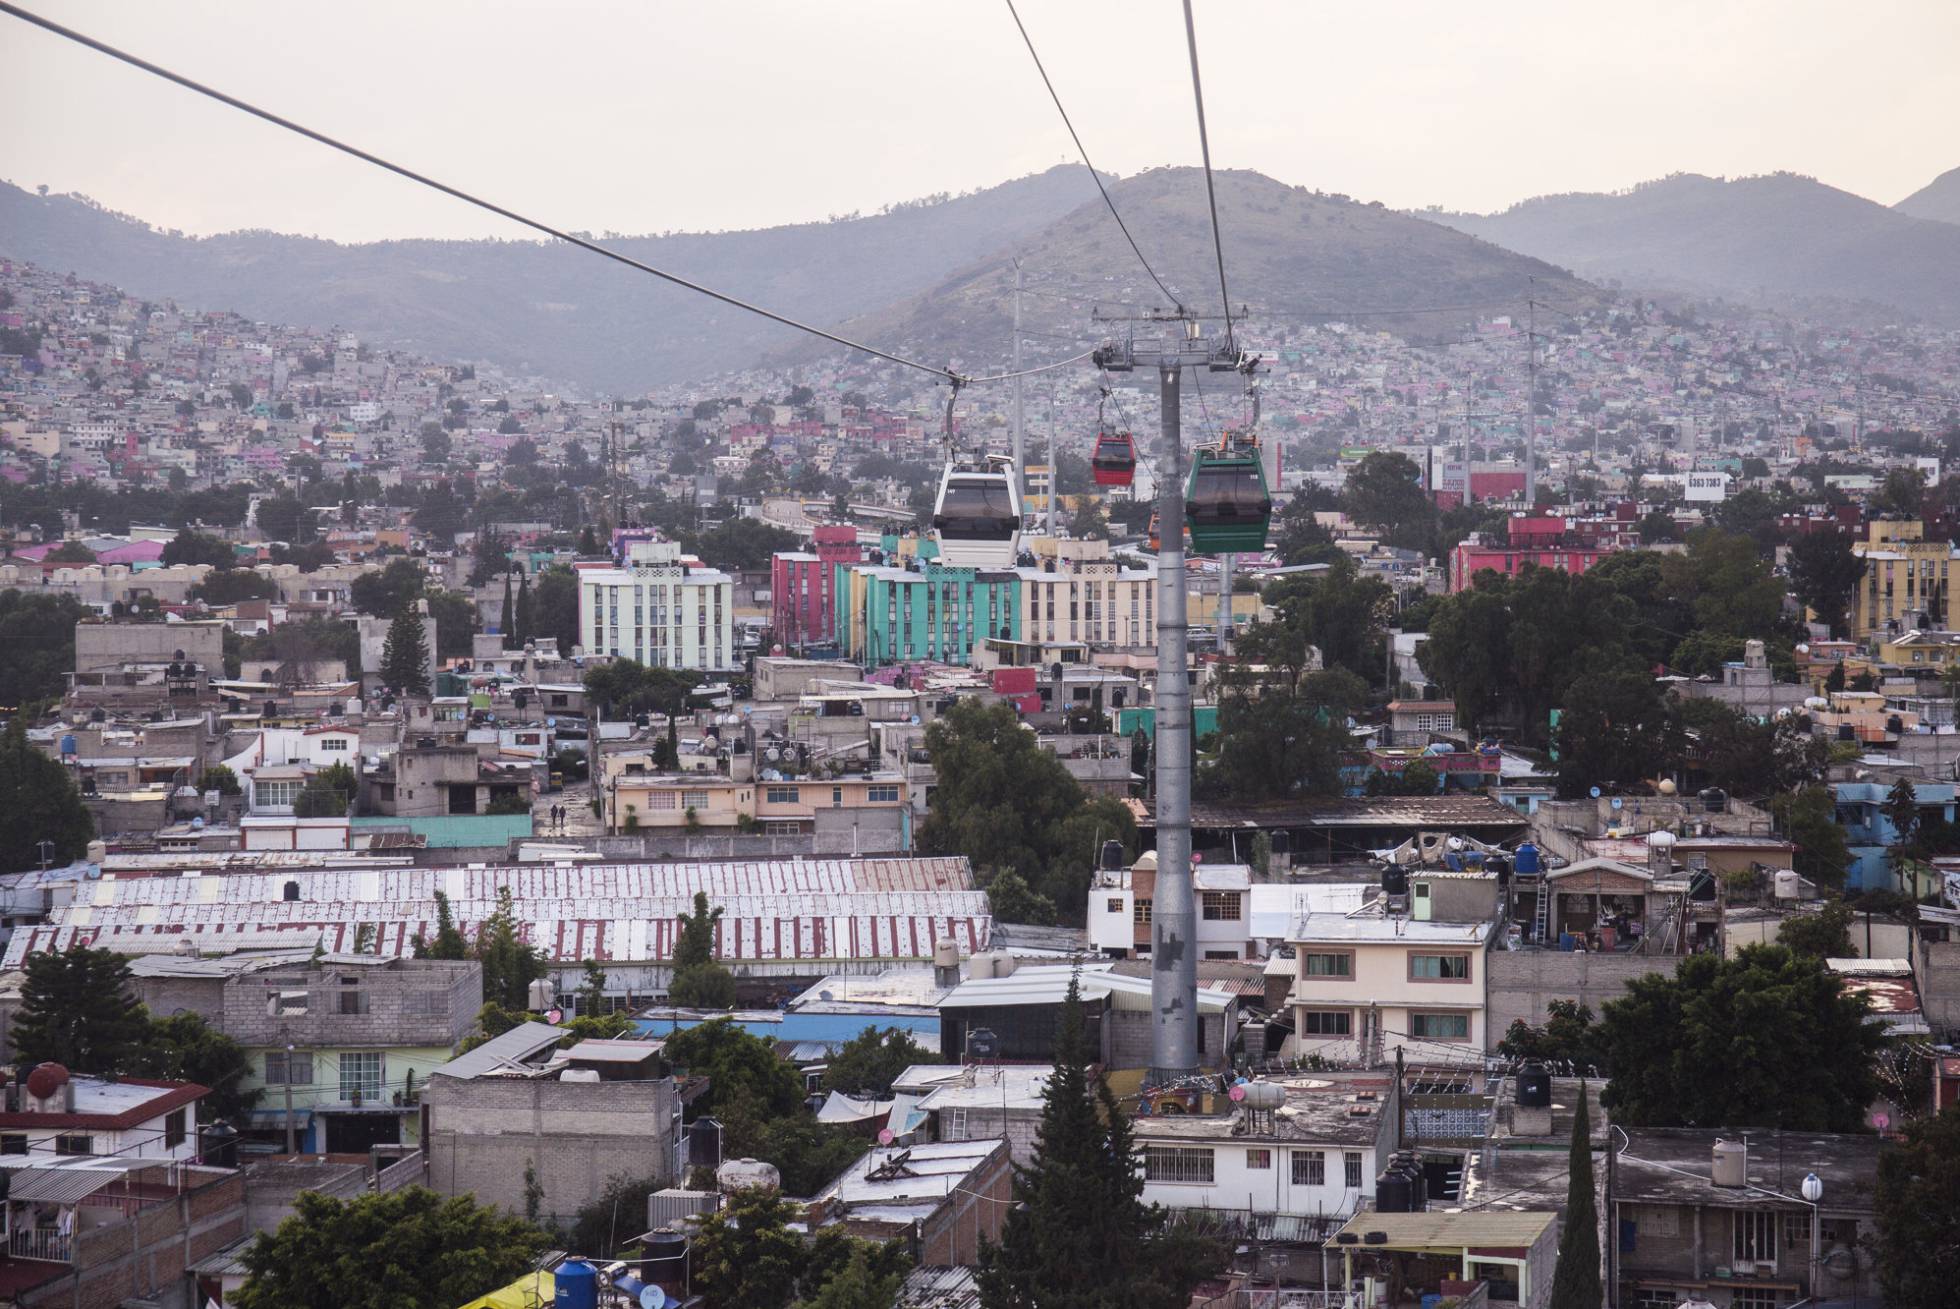 La fragilidad de la vida en Ecatepec